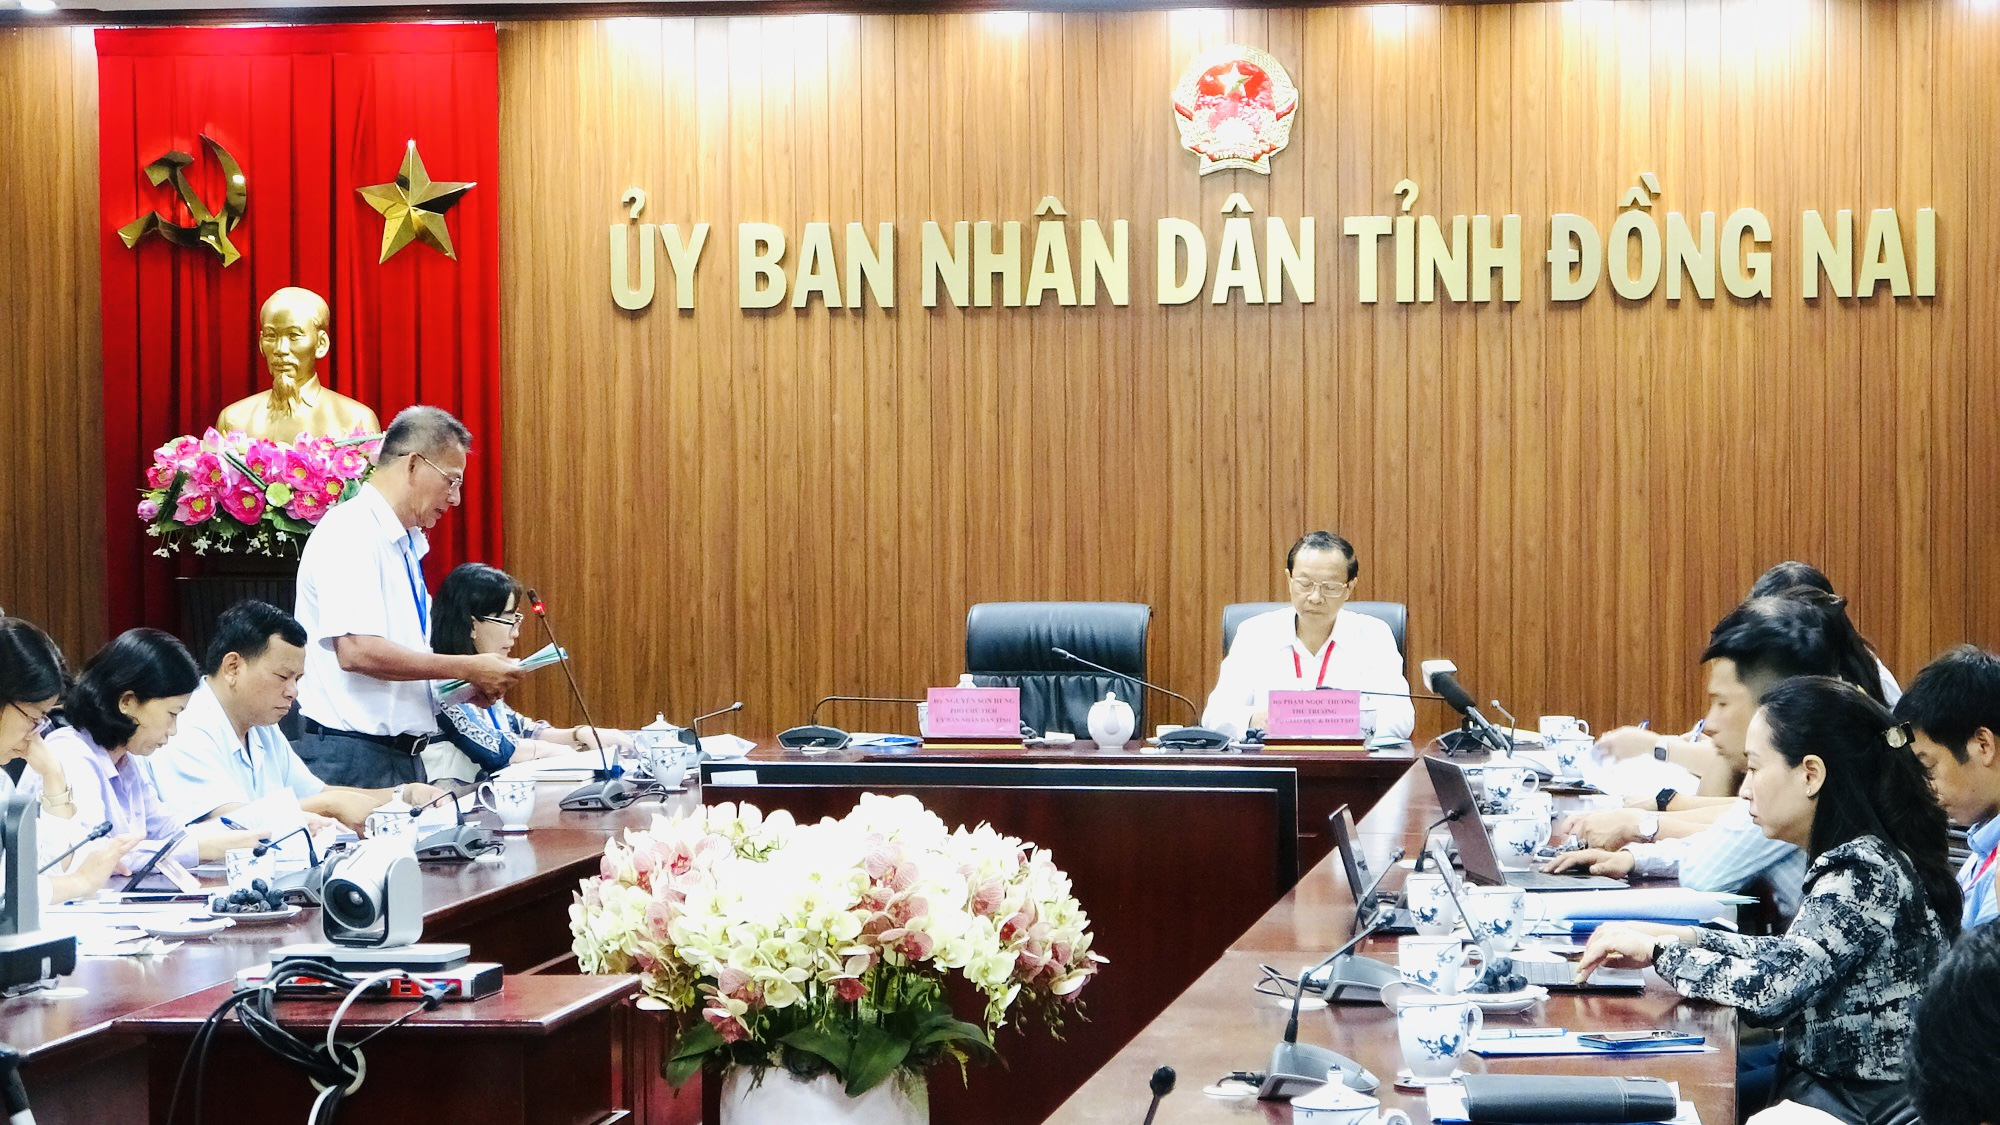 Ông Võ Ngọc Thạch, Phó giám đốc Sở GD-ĐT Đồng Nai, báo cáo với đoàn công tác.